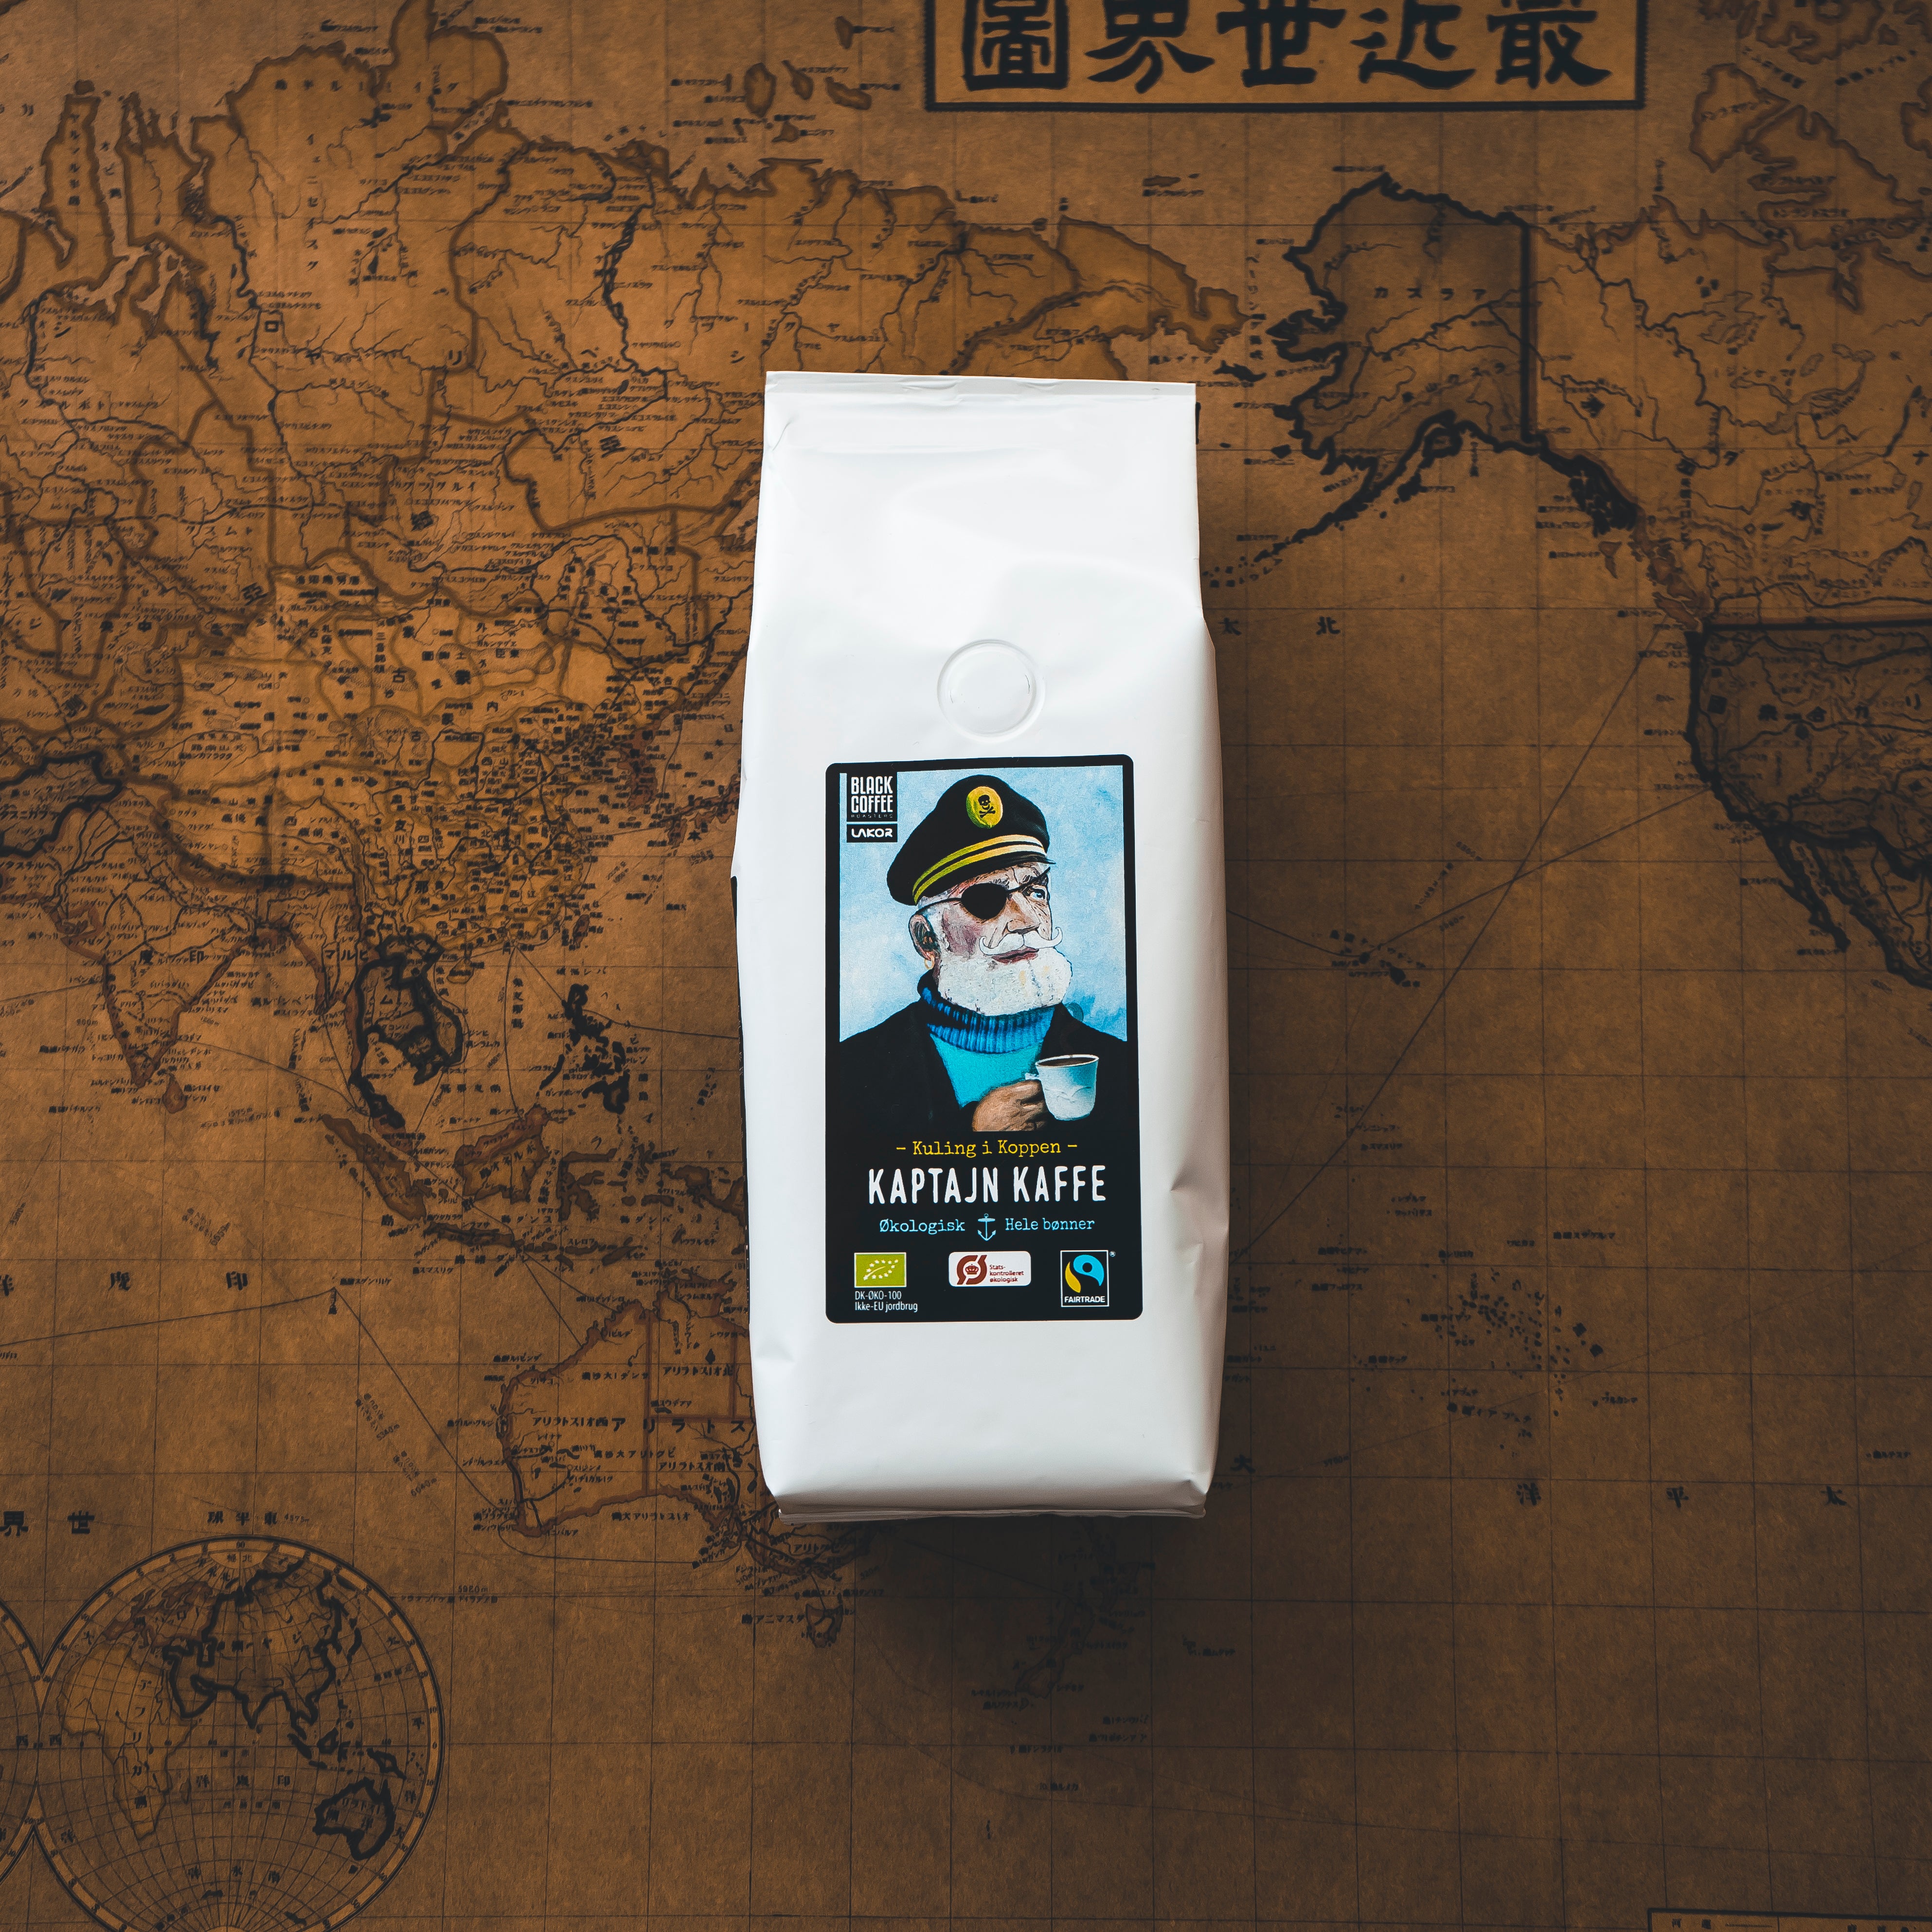 Kaptajn Kaffe, økologisk og fairtrade certificeret kaffe i en pose på 200g